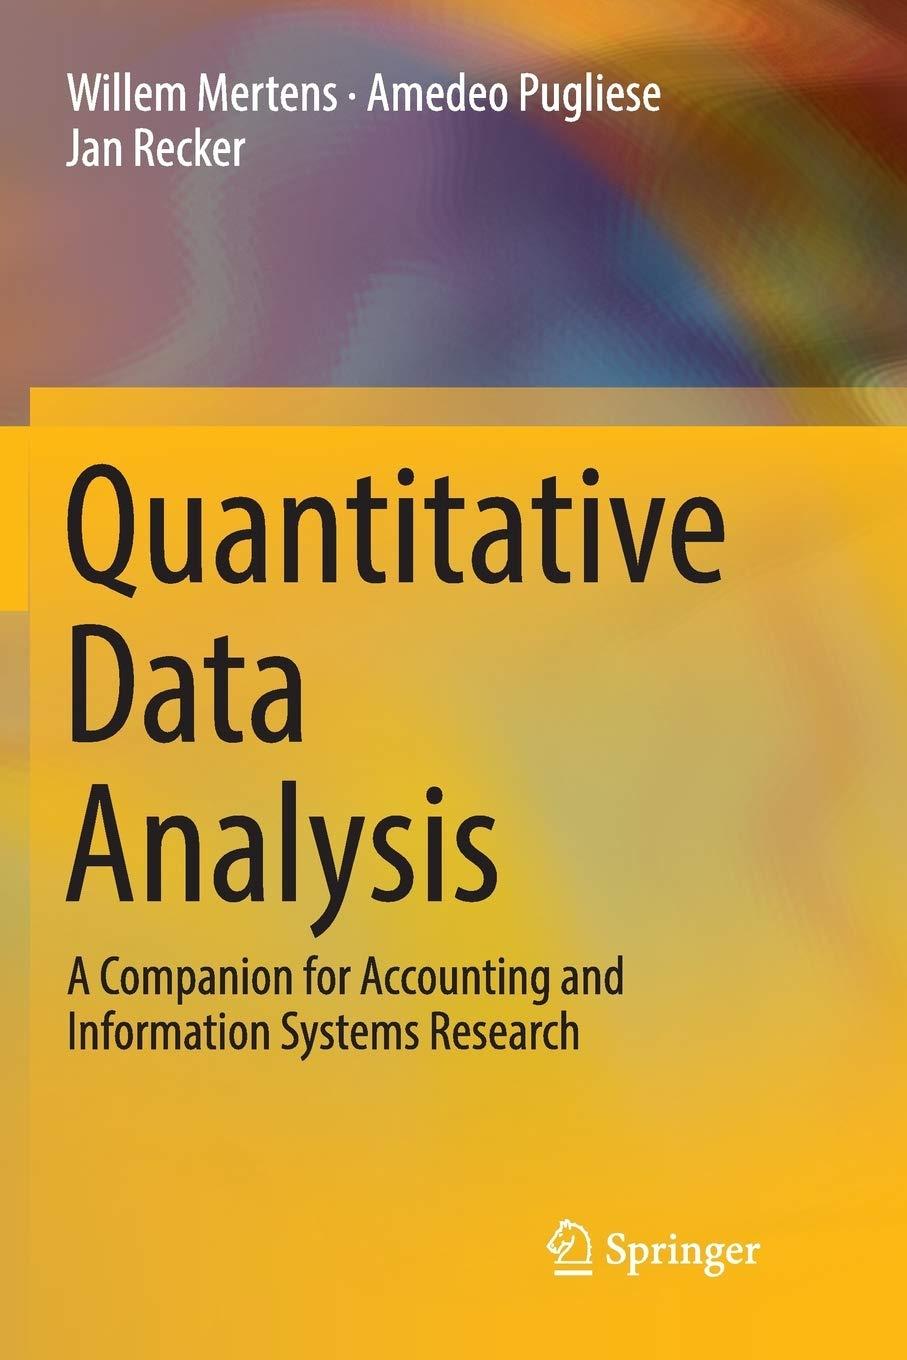 quantitative data analysis 1st edition willem mertens, amedeo pugliese, jan recker 3319826409, 9783319826400